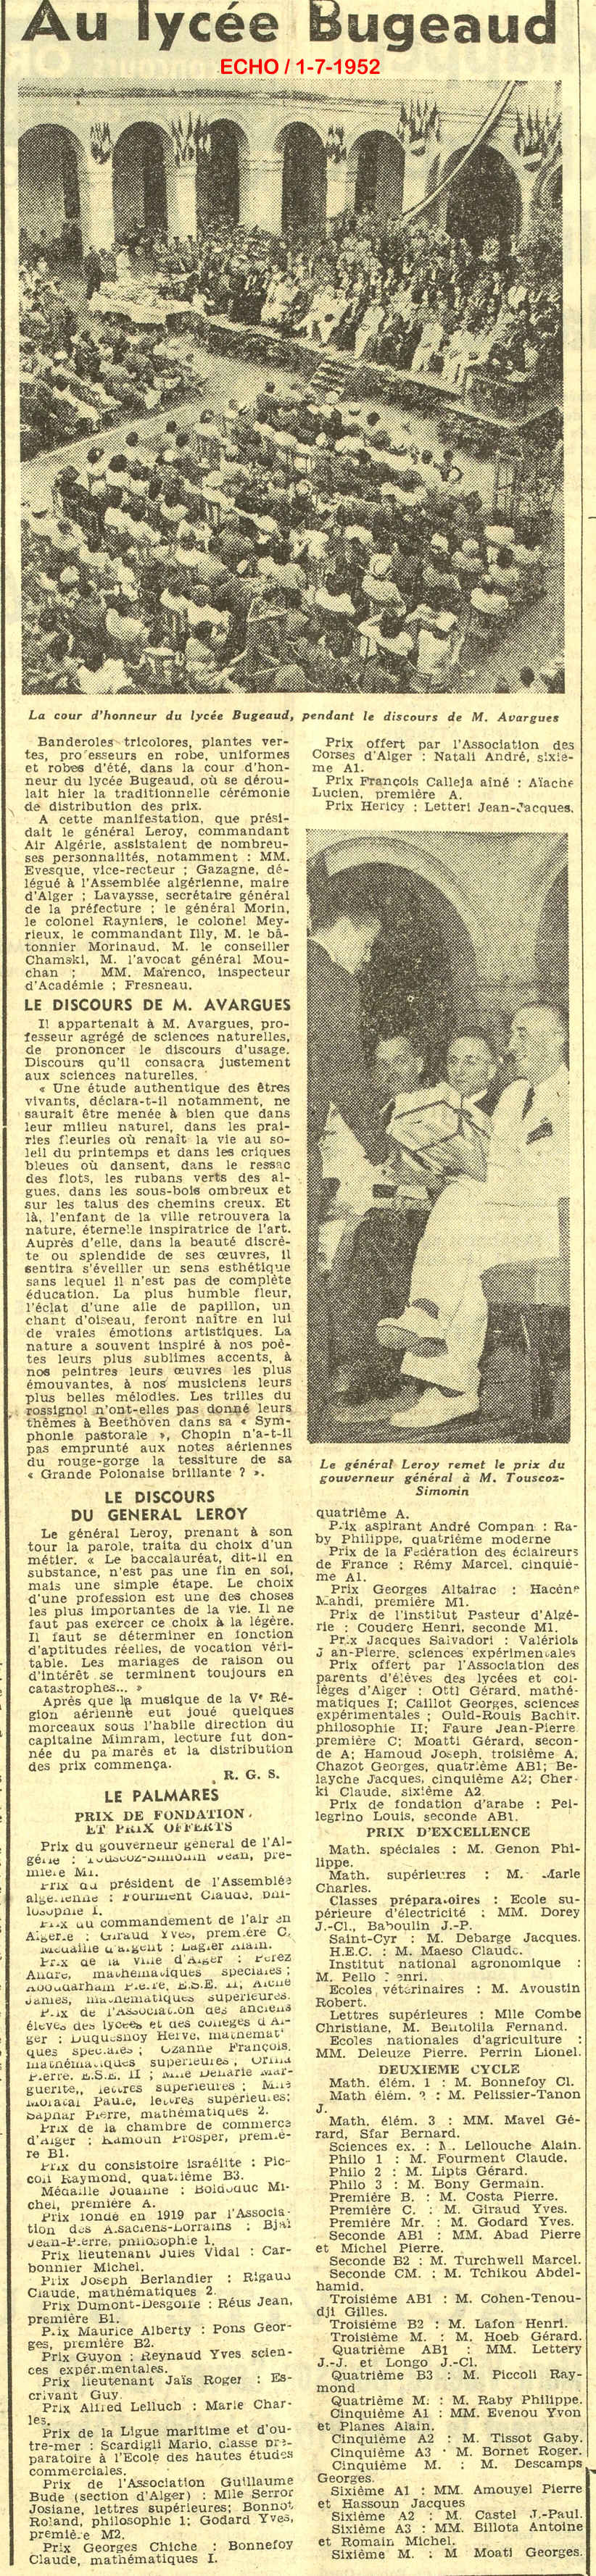 La solennelle cérémonie de distribution des prix auLycées Bugeaud - 1952